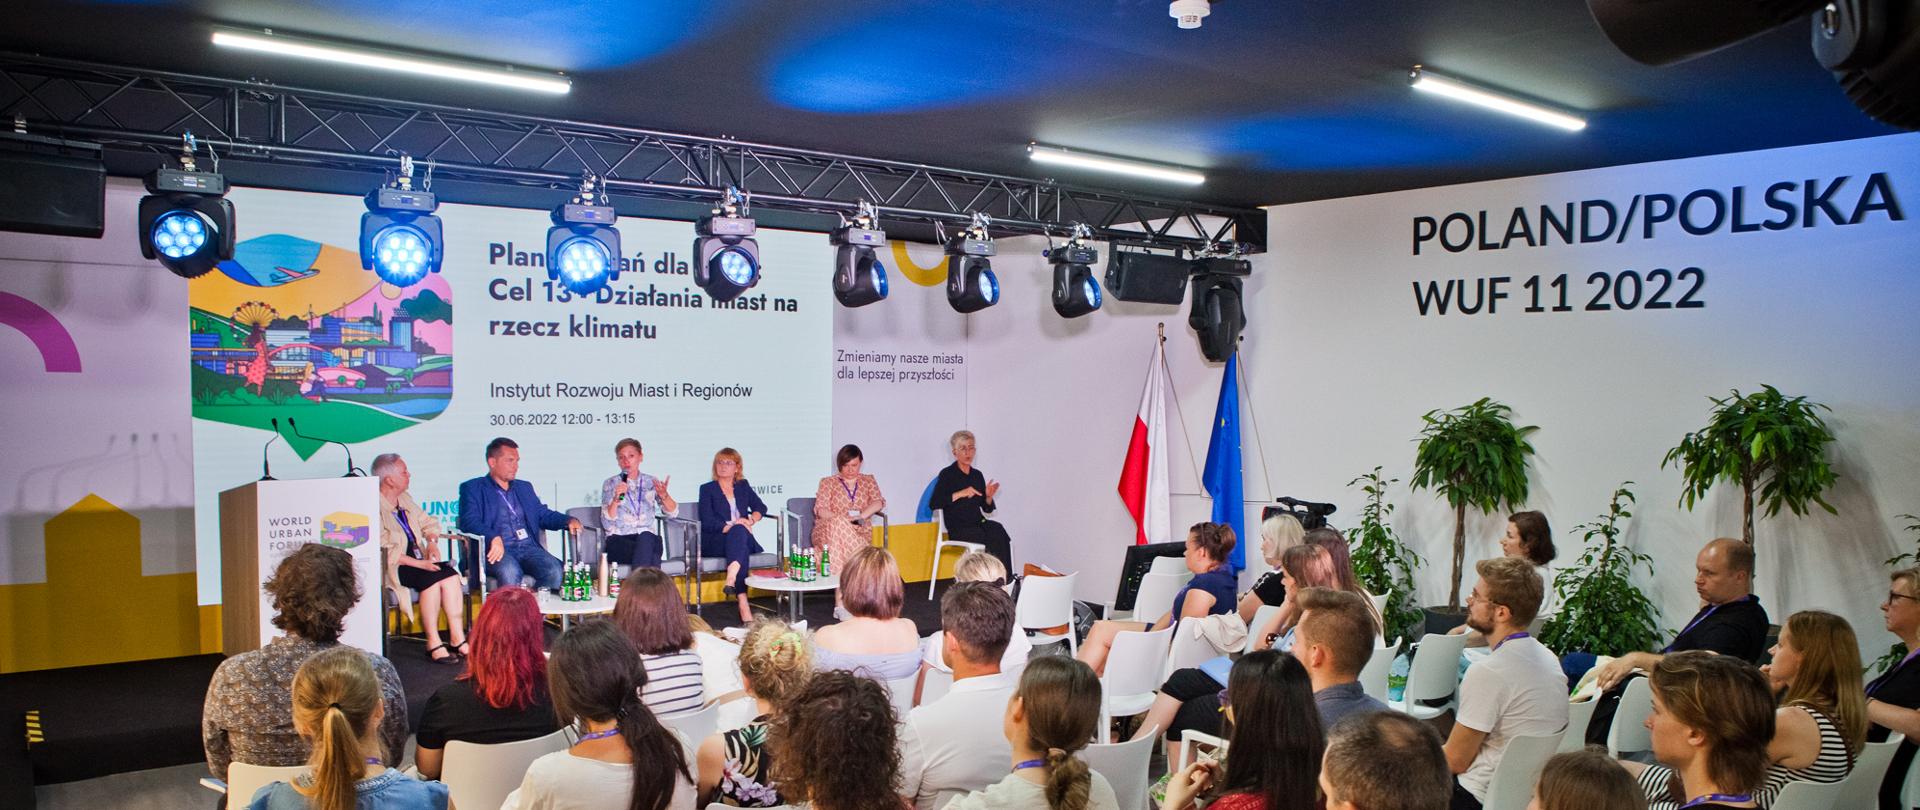 Sesja podczas 11. Światowego Forum Miejskiego w 2022 roku. Na widowni osoby słuchają dyskusji między pięcioma osobami na podium.